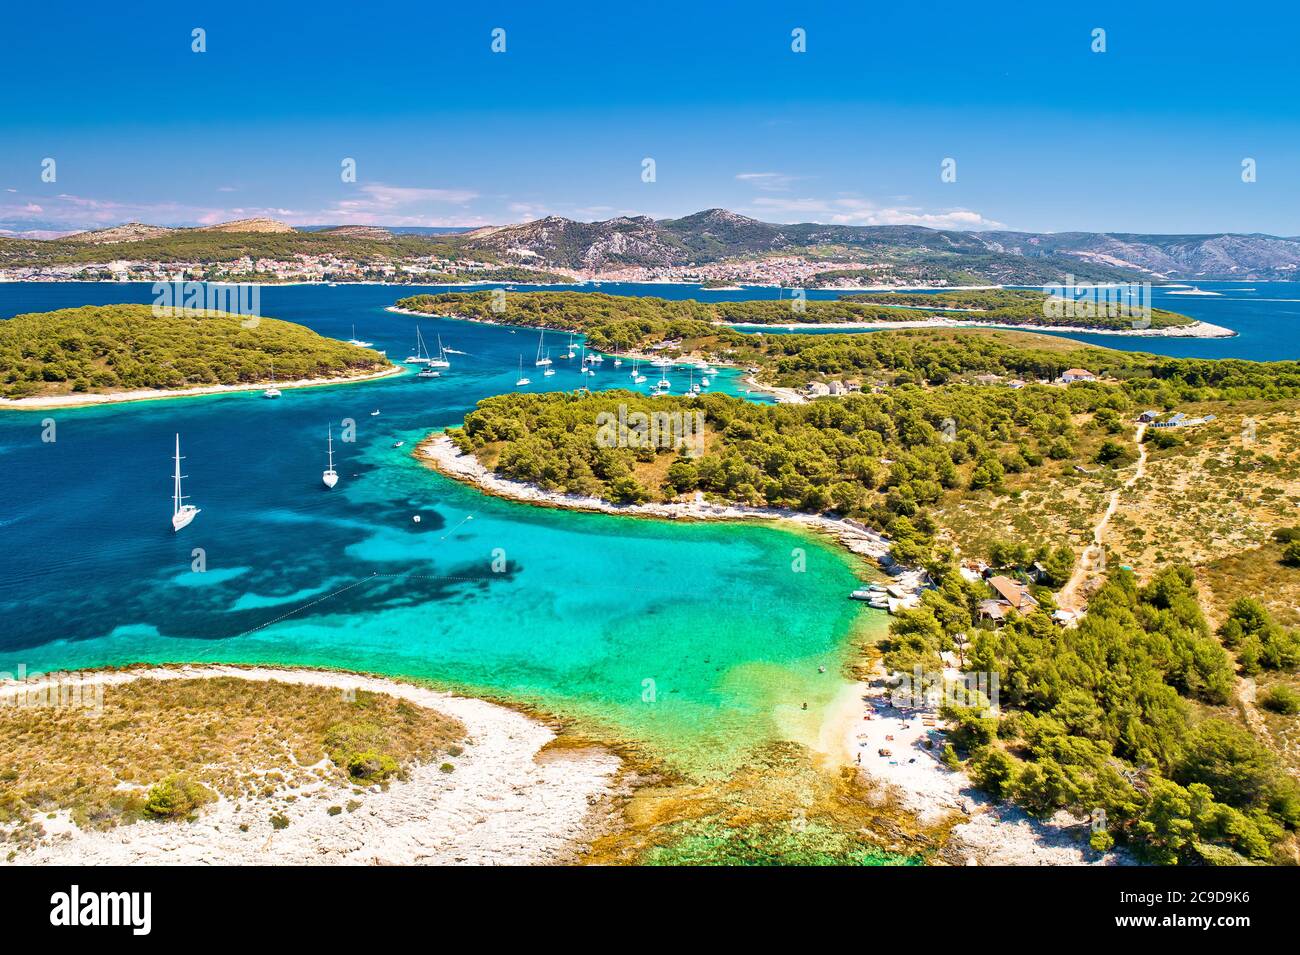 Pakleni otoci Segelziel arcipelago Luftbild, Insel Hvar, Dalmatien Region von Kroatien Stockfoto